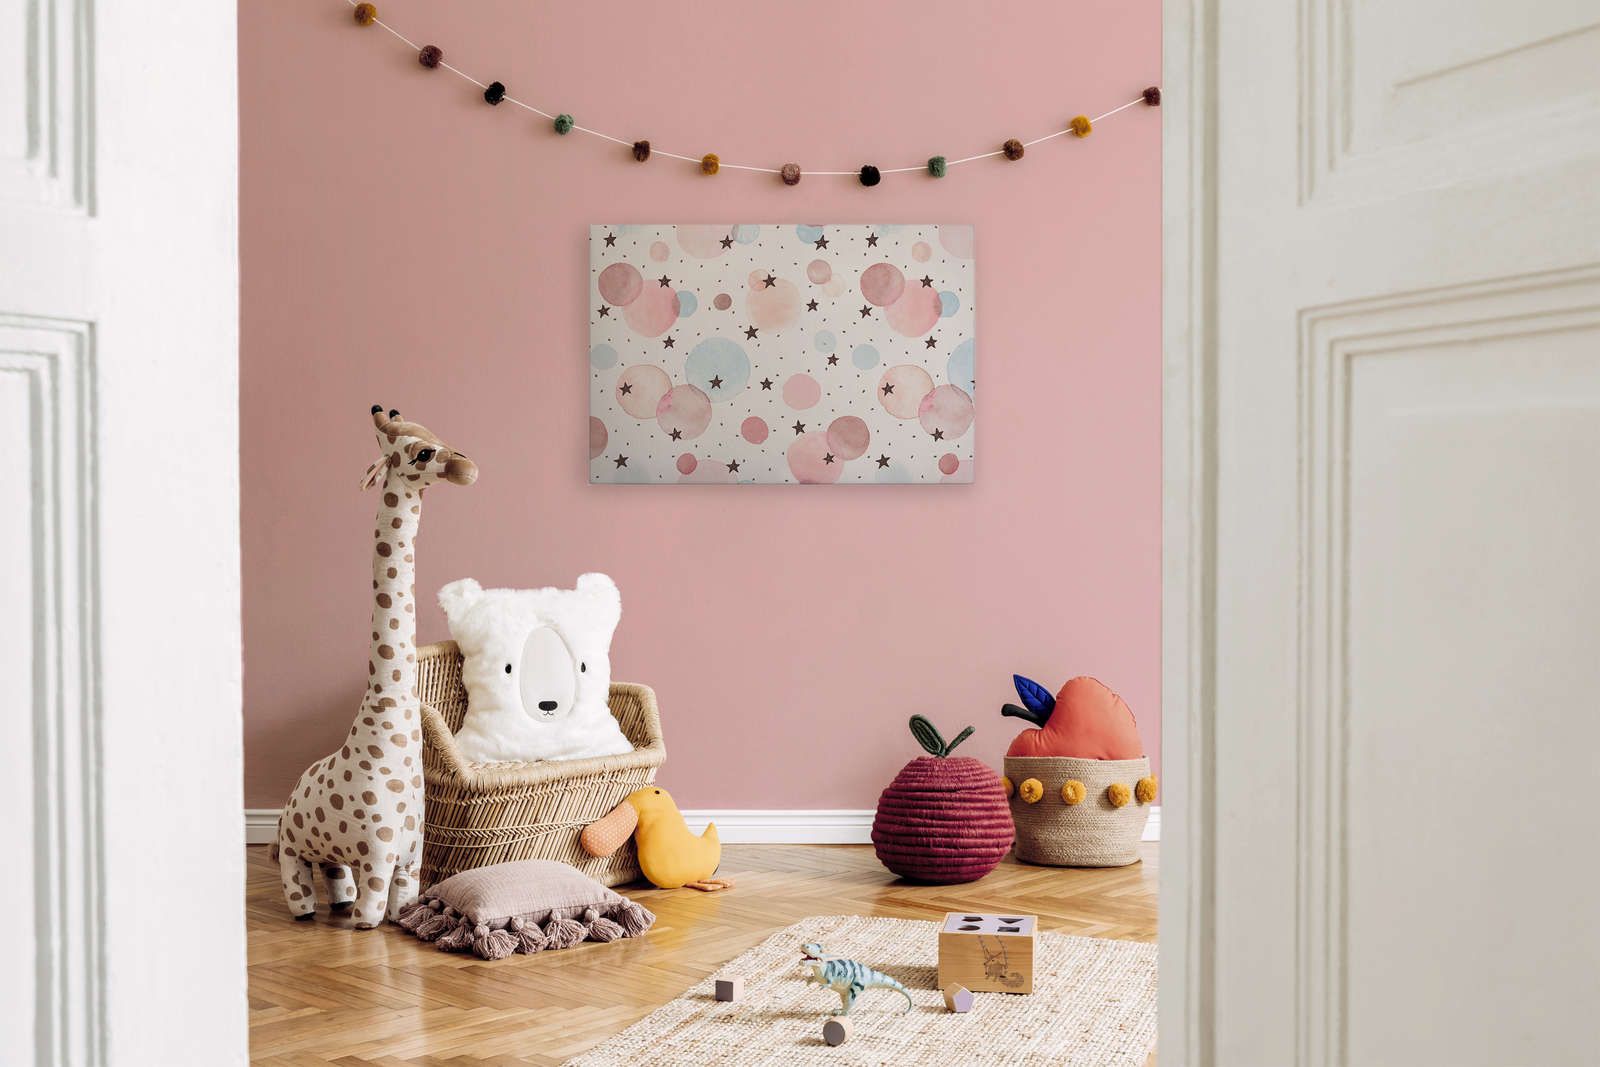             Lienzo para habitación infantil con estrellas, lunares y círculos - 90 cm x 60 cm
        